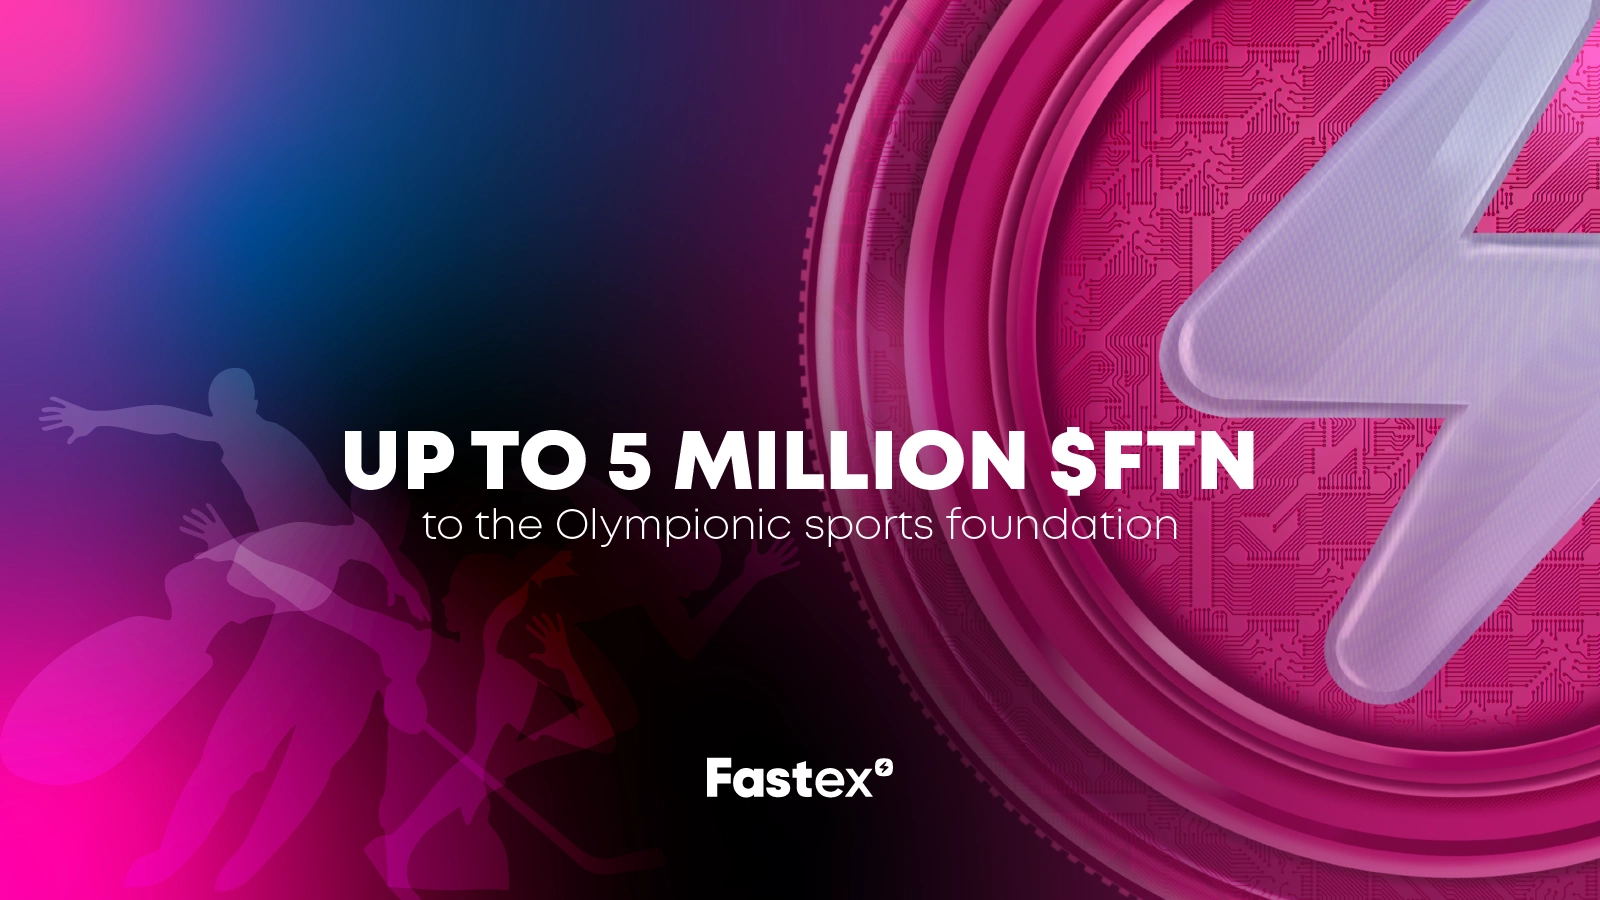 A Fastex fornecerá até 5 milhões de FTN para encorajar o desenvolvimento do esporte nacional na Arménia